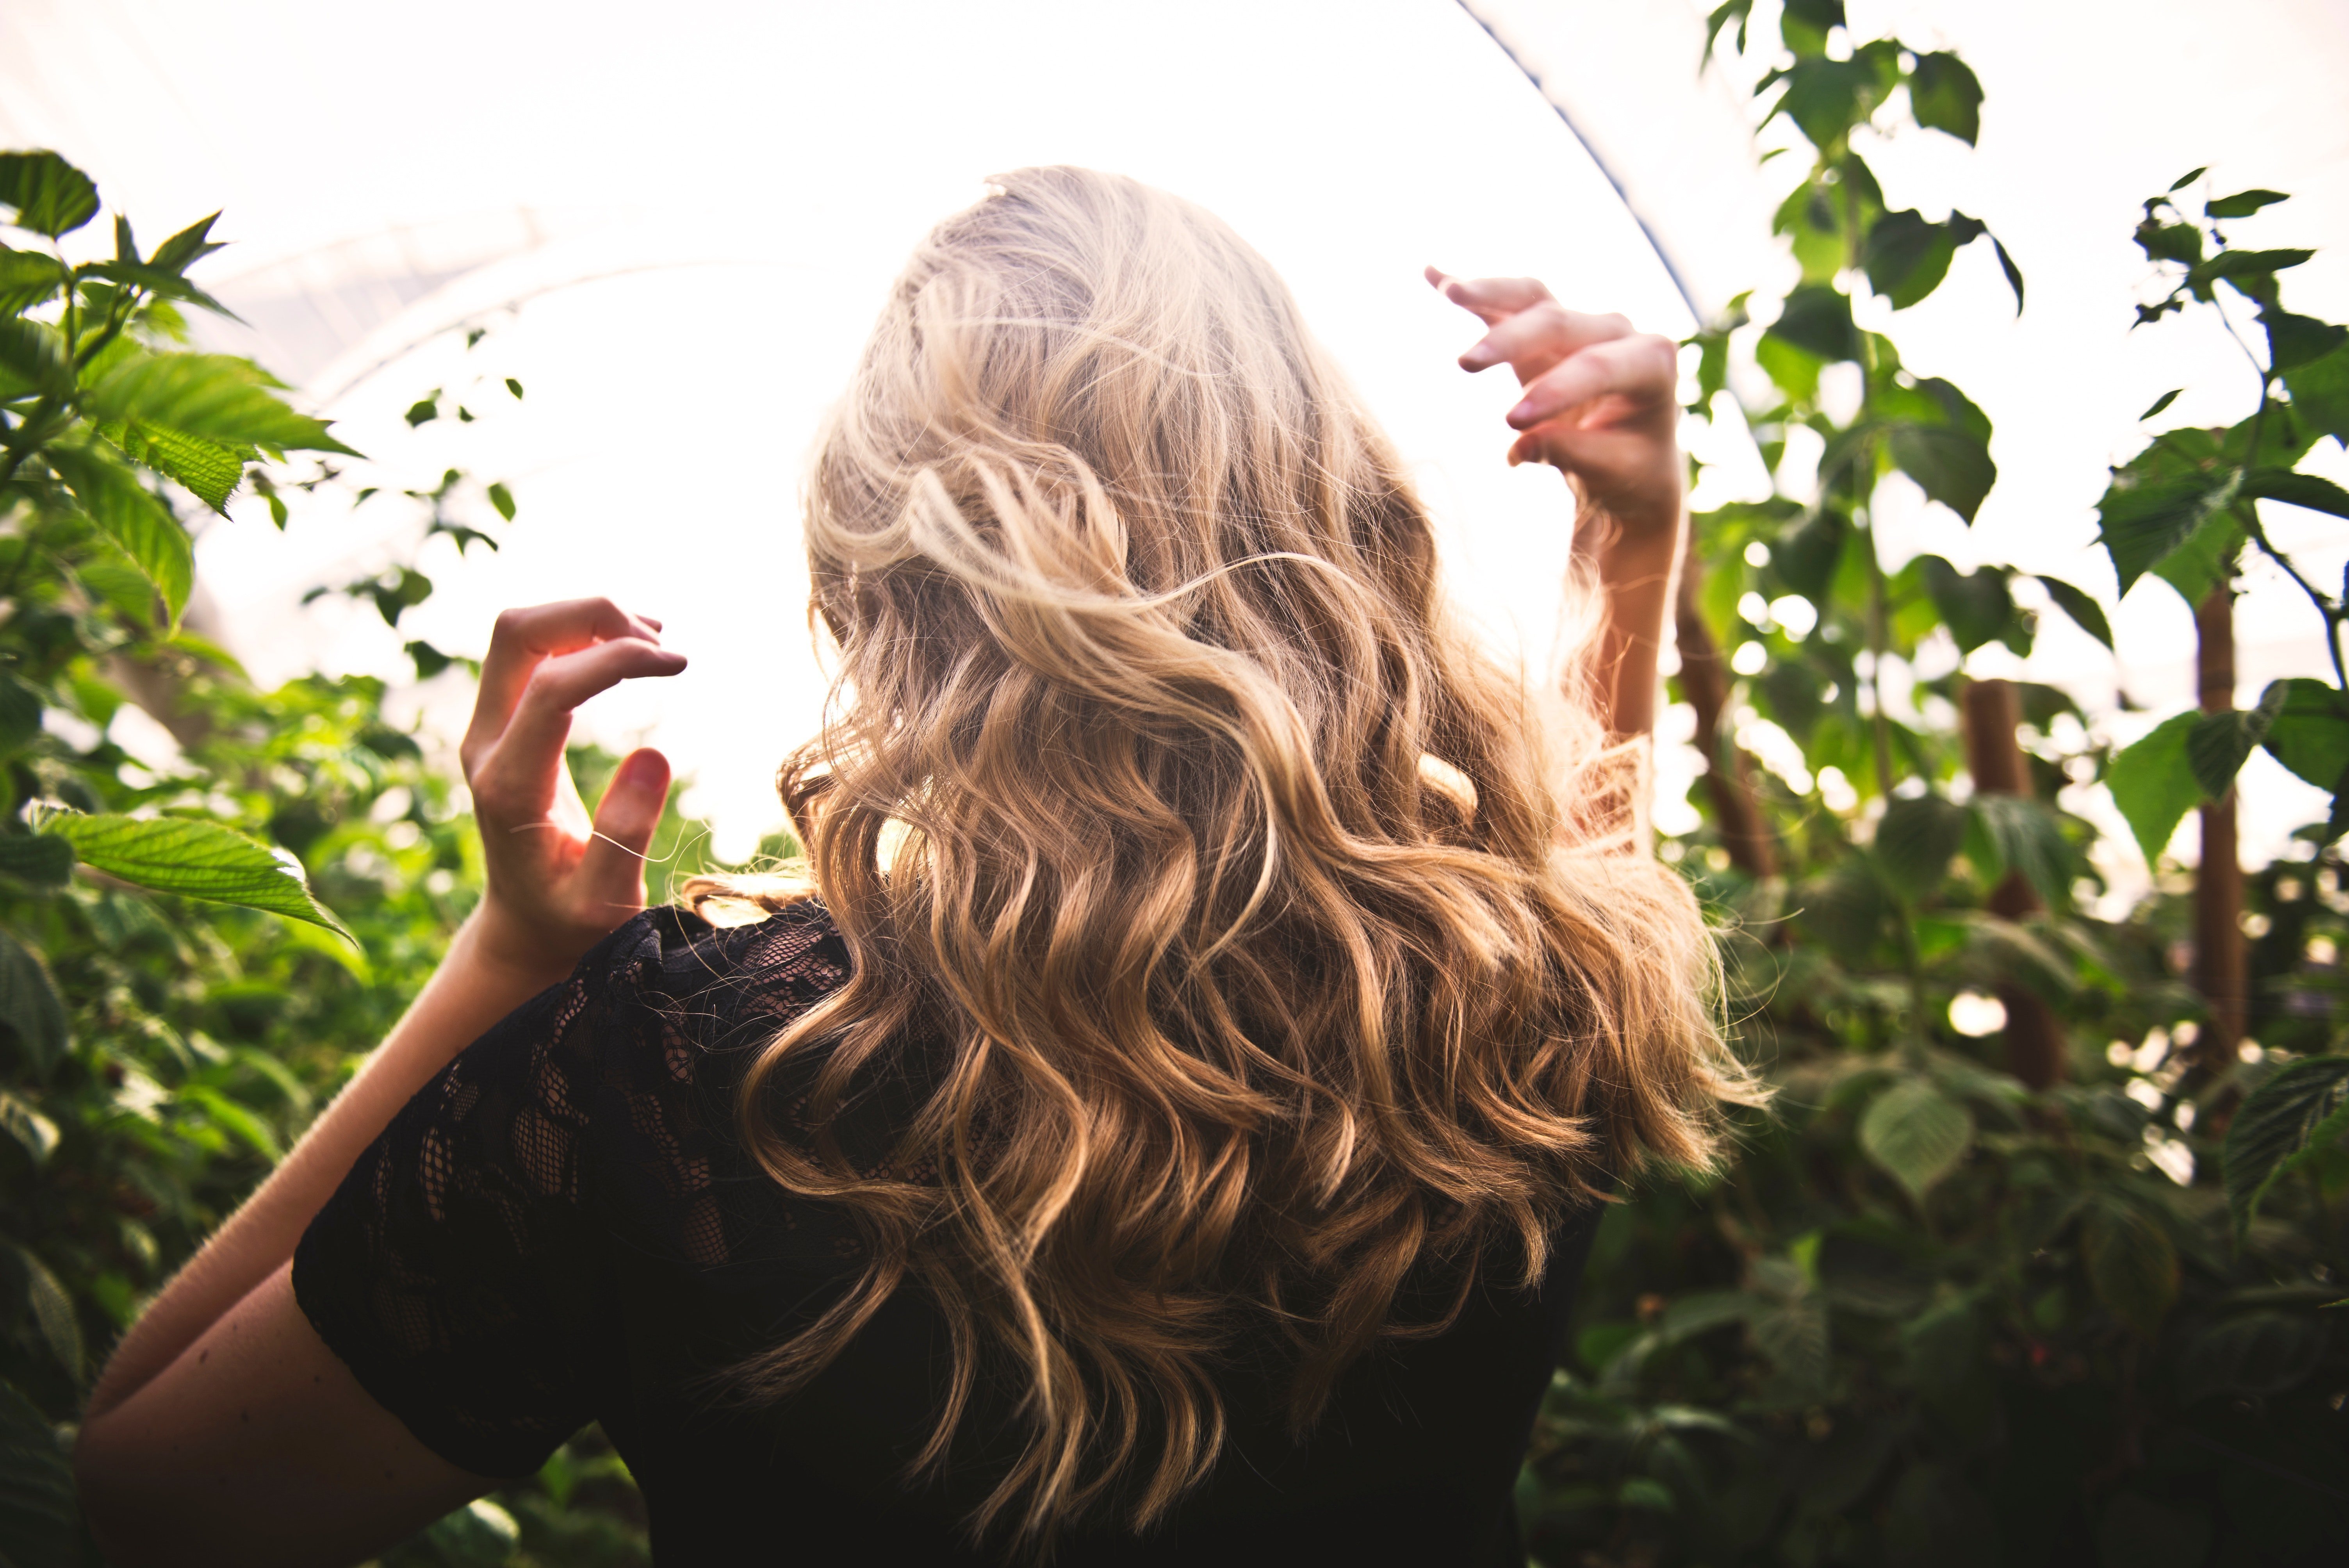 Μάθε τα 3 μυστικά για υγιή μαλλιά μετά το καλοκαίρι